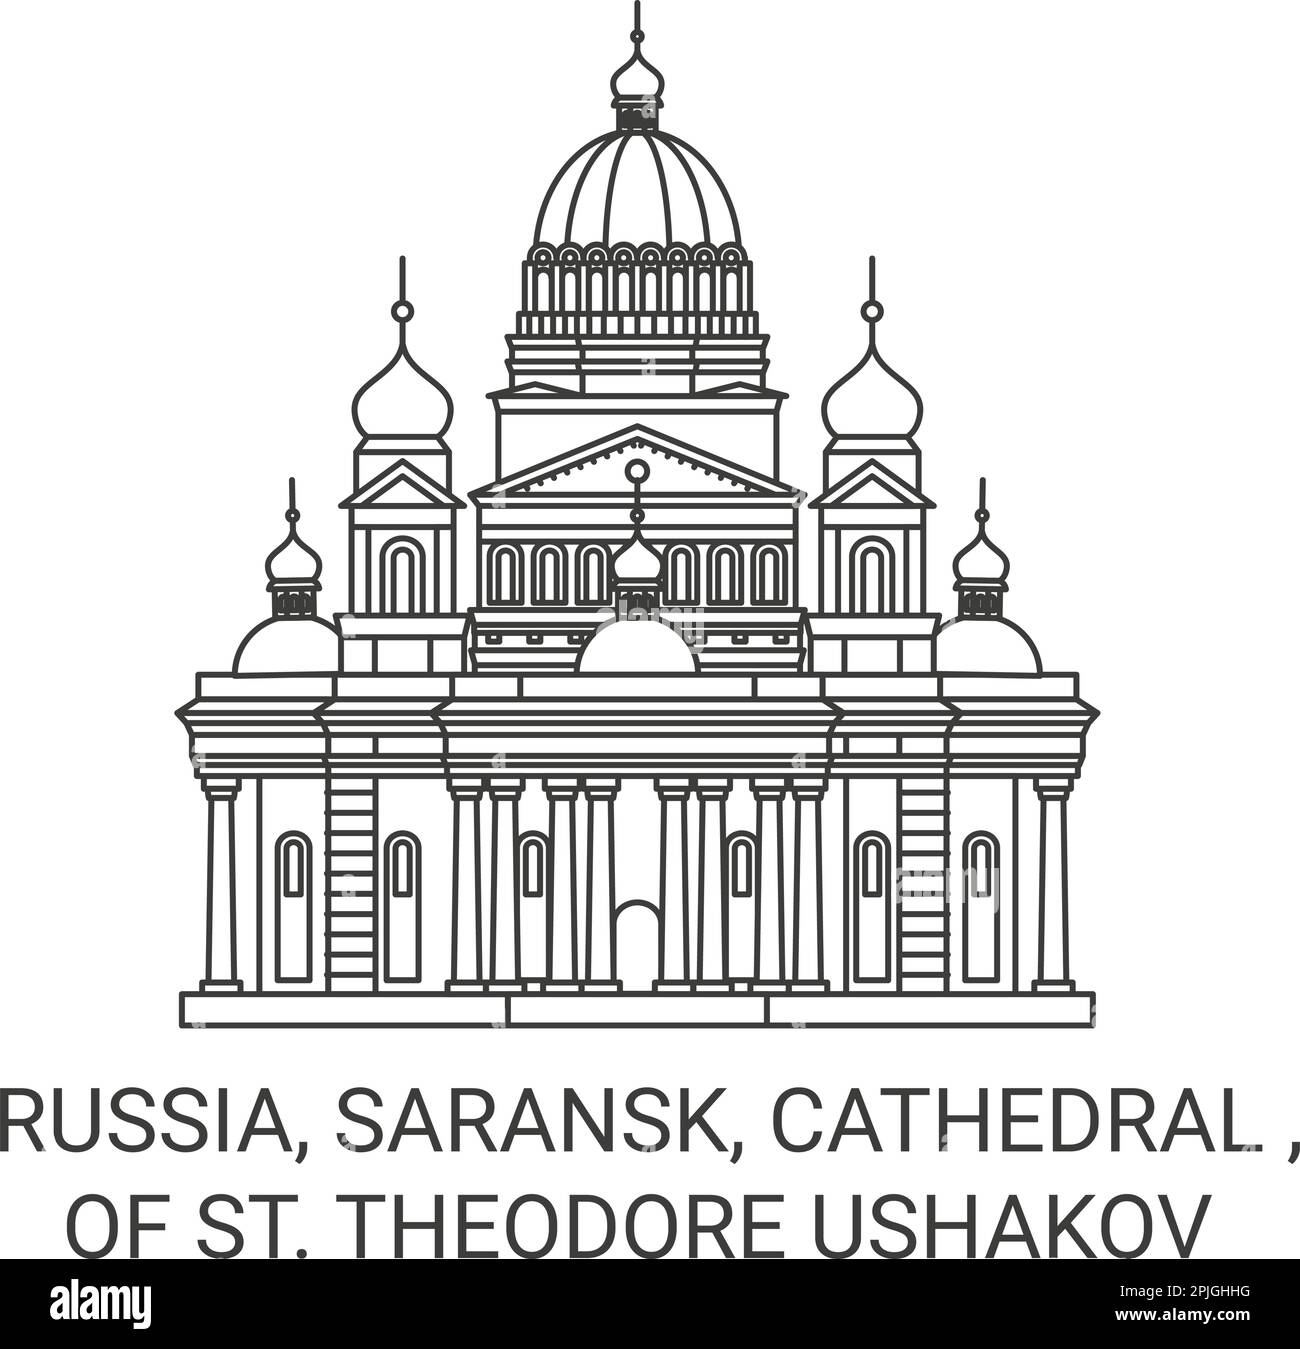 Russie, Saransk, Cathédrale, de Saint Illustration du vecteur de repère de voyage Theodore Ushakov Illustration de Vecteur